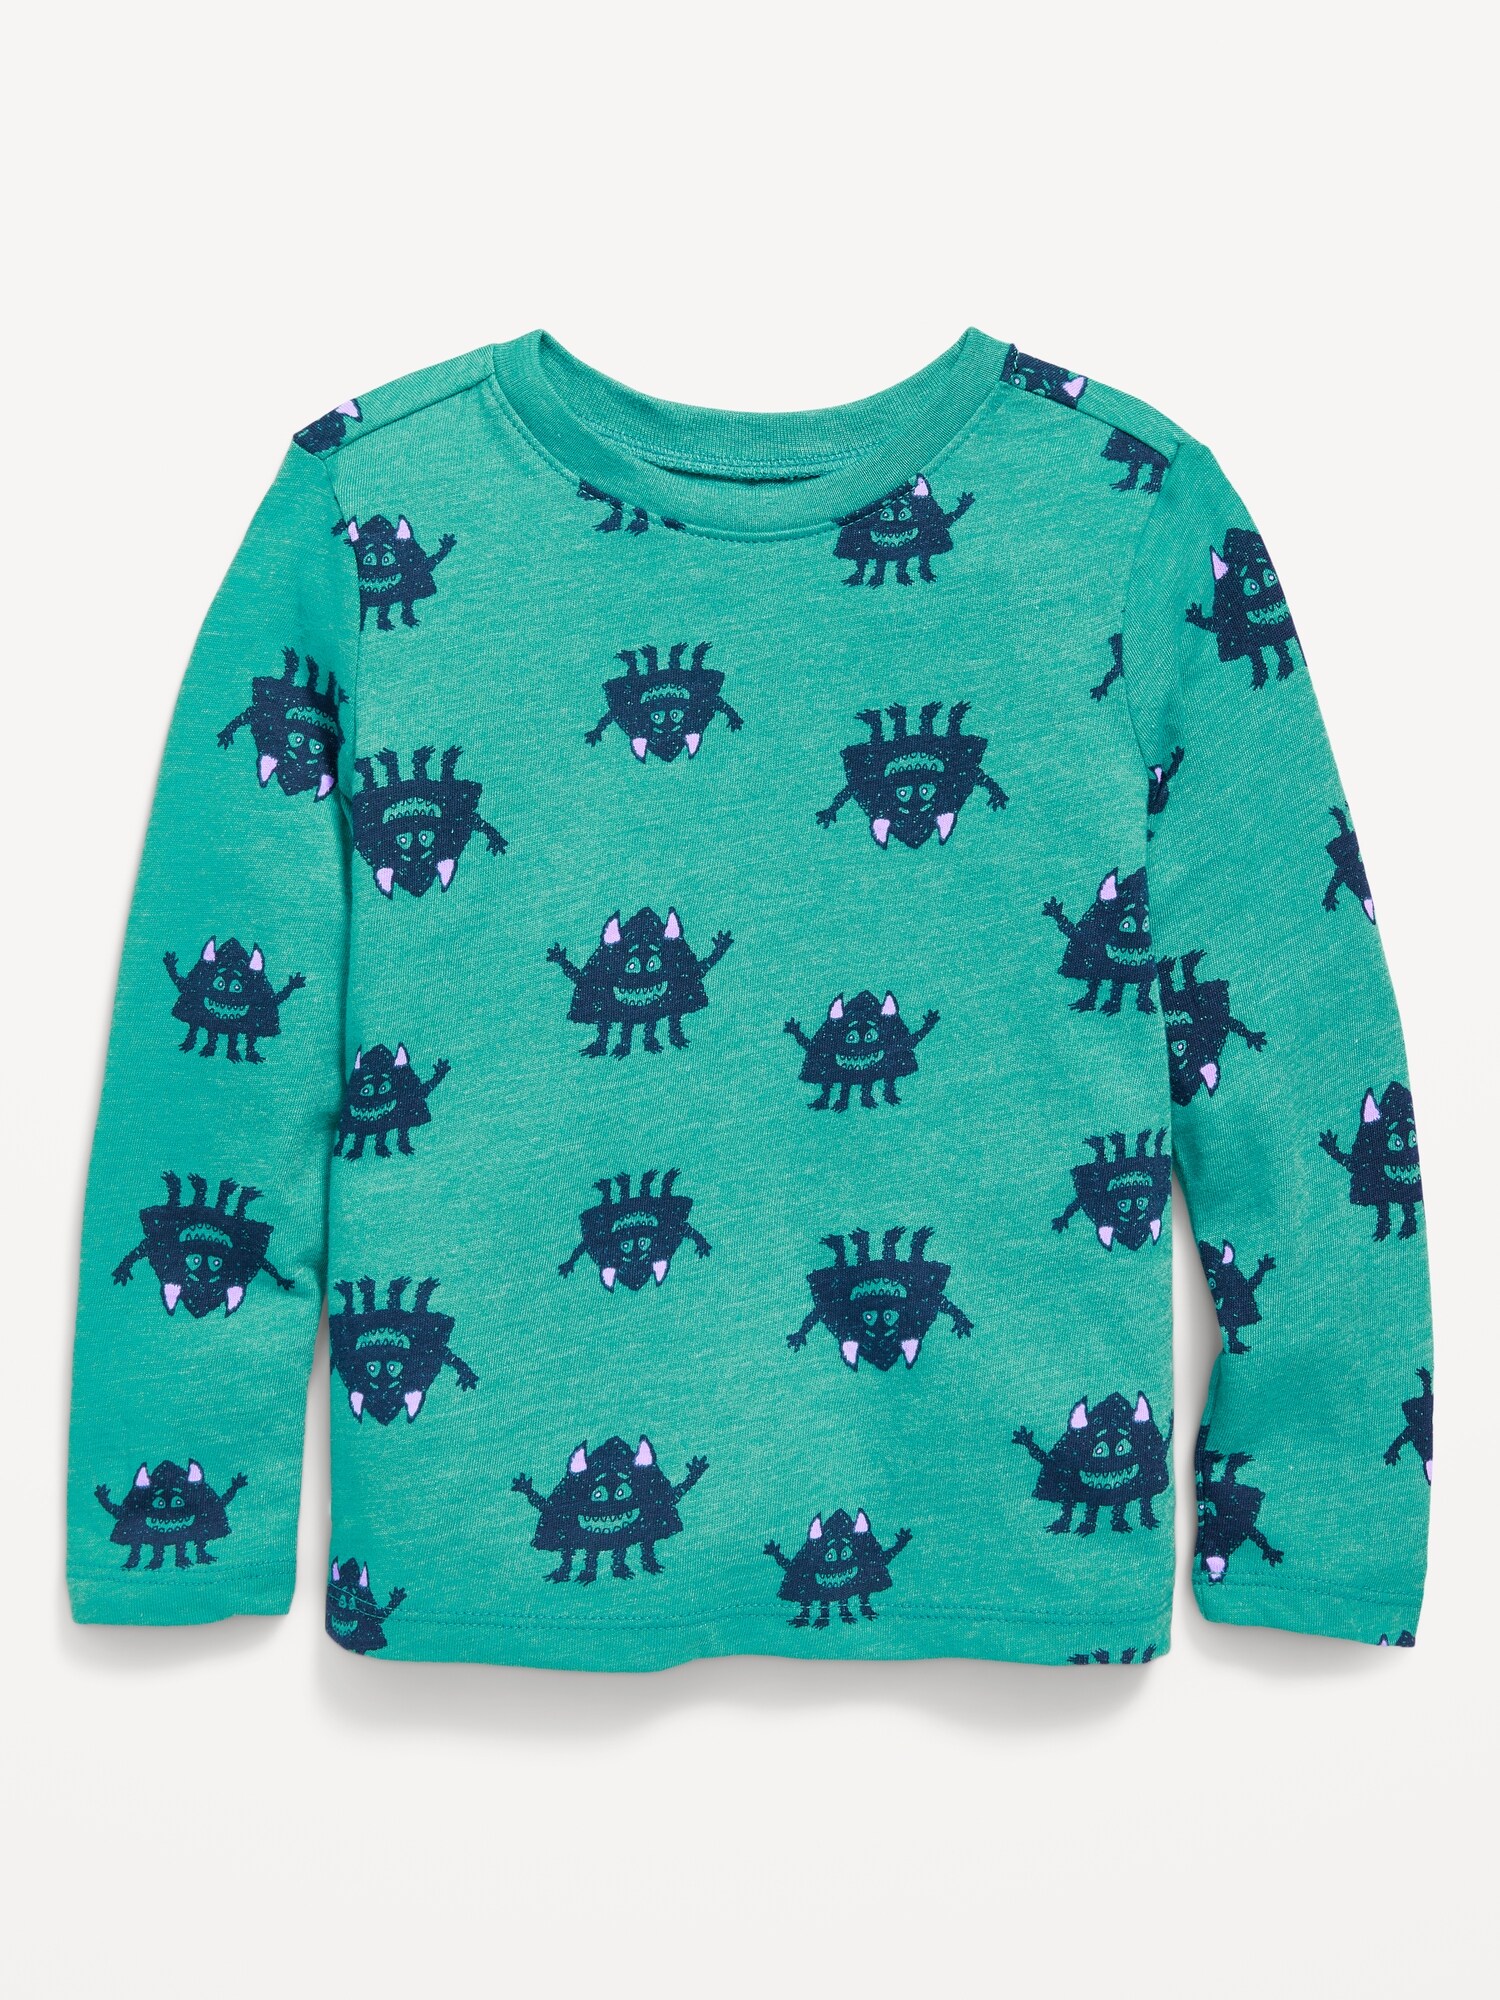 Oldnavy Unisex Printed Long-Sleeve T-Shirt for Toddler